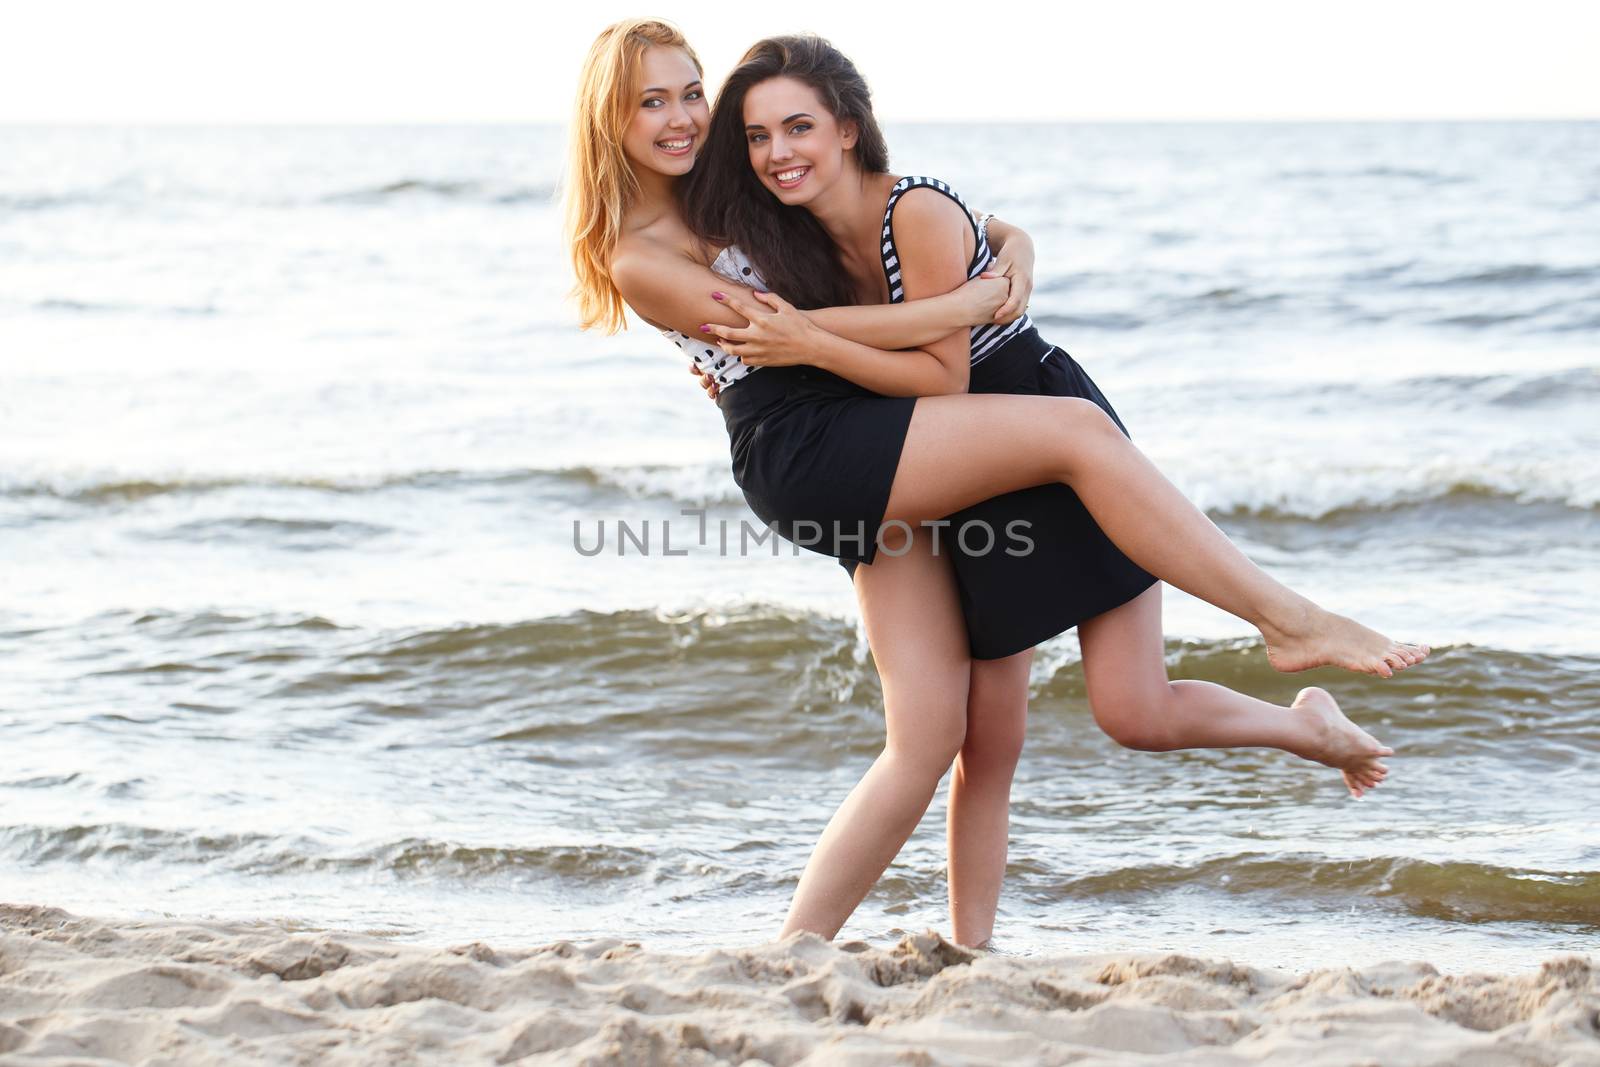 Summer, sea. Cute girls on the beach